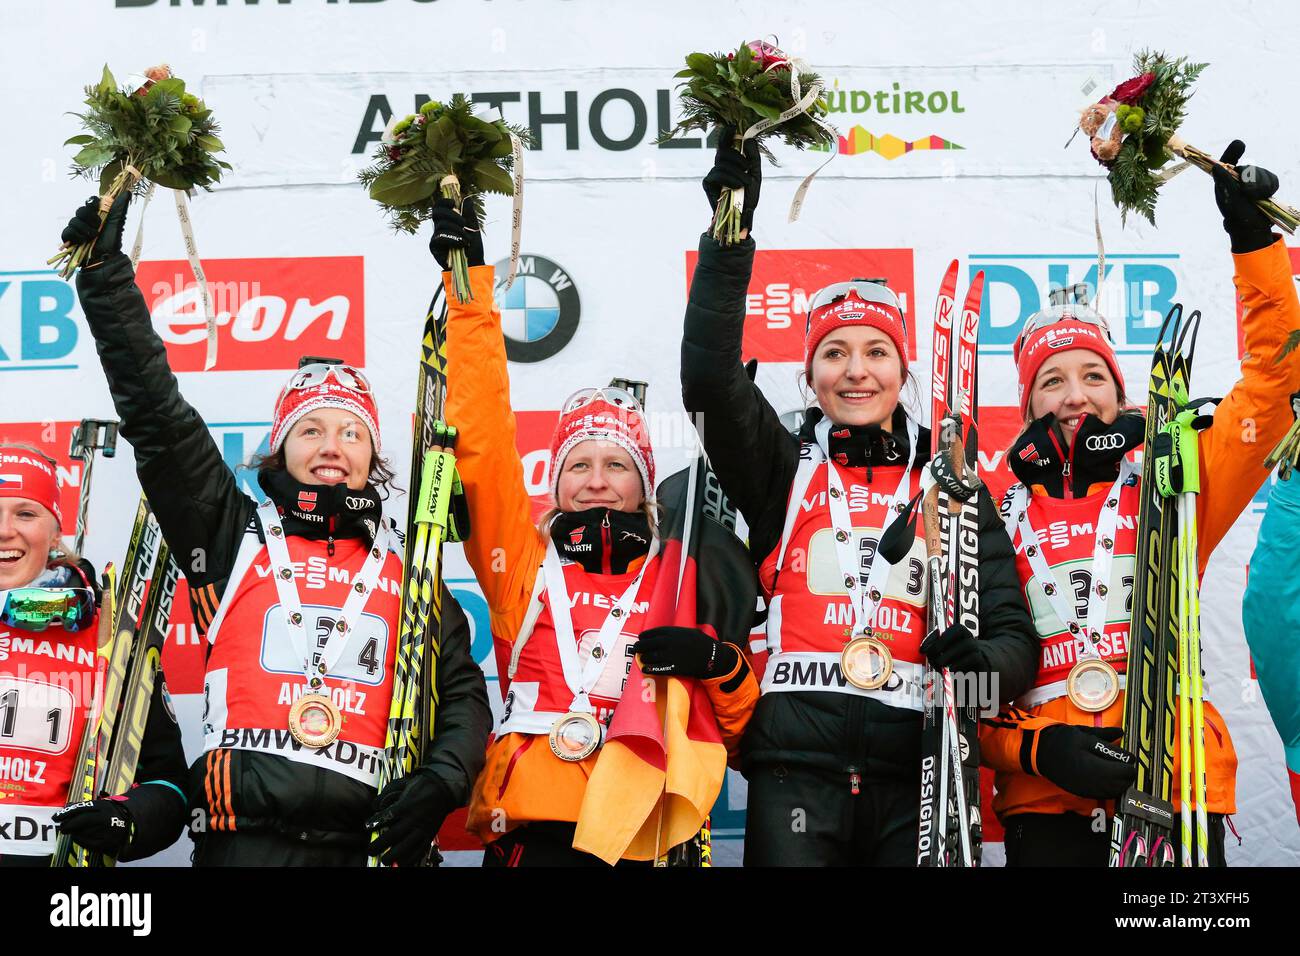 Laura Dahlmeier, Franziska Hildebrand, Luise Kummer,Franziska Preuss, Jubel bei Siegerehrung Biathlon Welt Cup 4 x 6 KM Staffel der Frauen in Antholz, Italien am 25.01.2015 Stock Photo